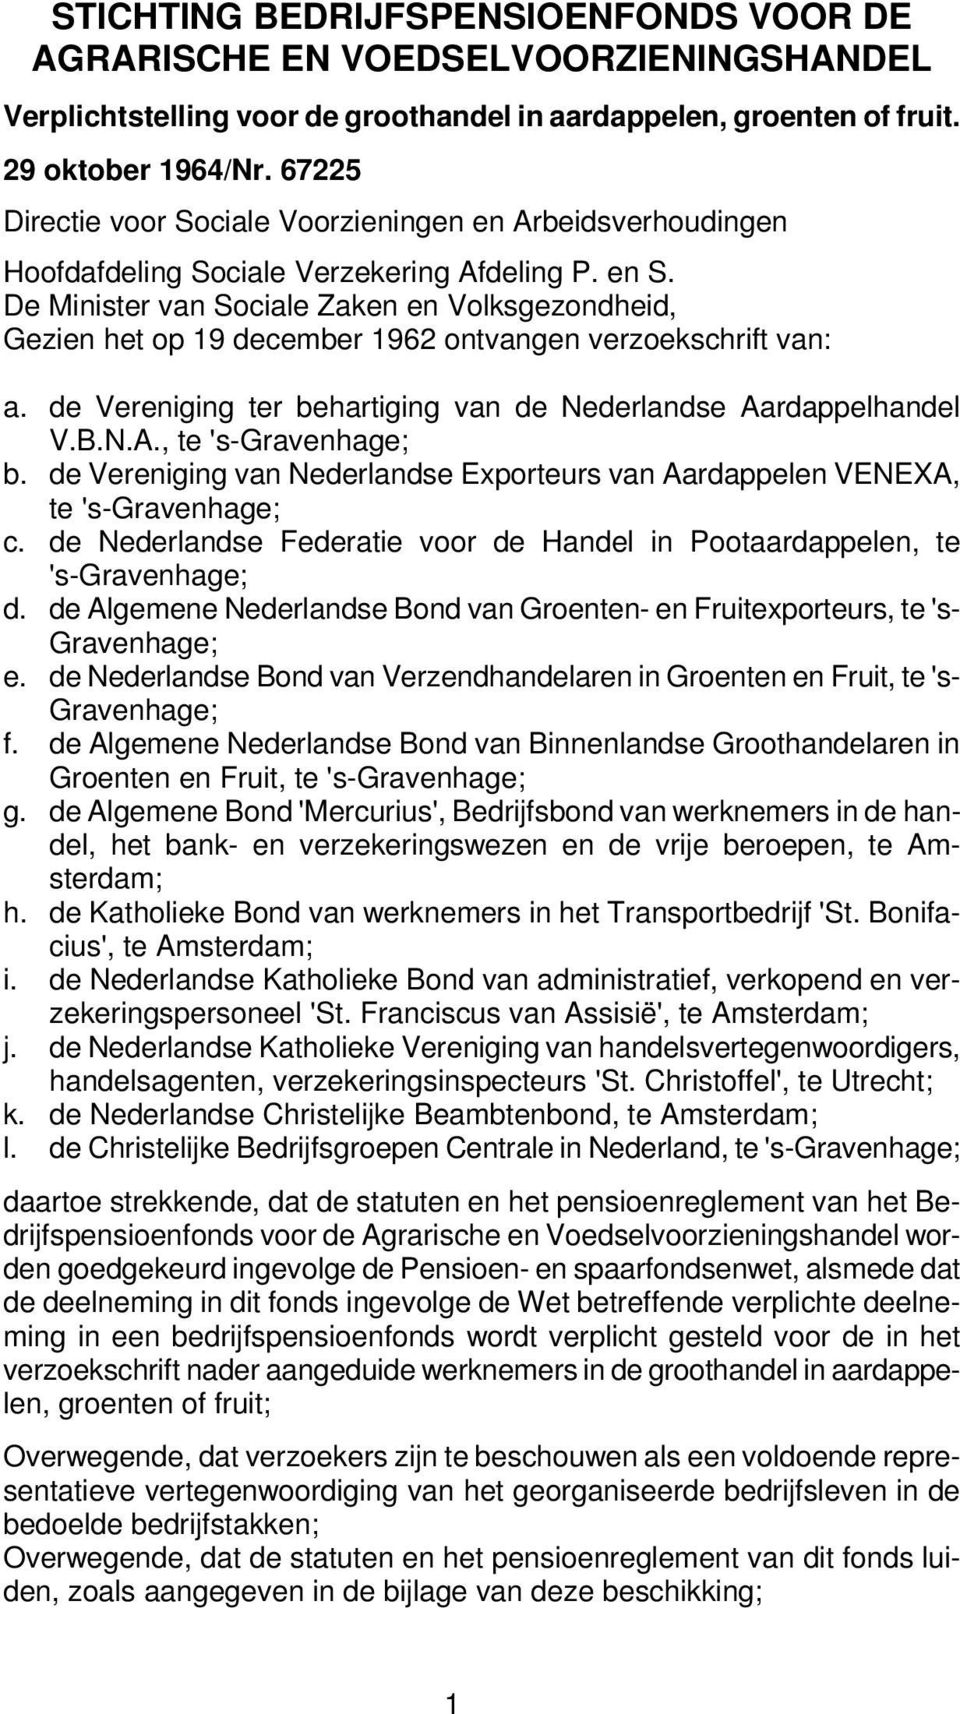 De Minister van Sociale Zaken en Volksgezondheid, Gezien het op 19 december 1962 ontvangen verzoekschrift van: a. de Vereniging ter behartiging van de Nederlandse Aardappelhandel V.B.N.A., te 's-gravenhage; b.